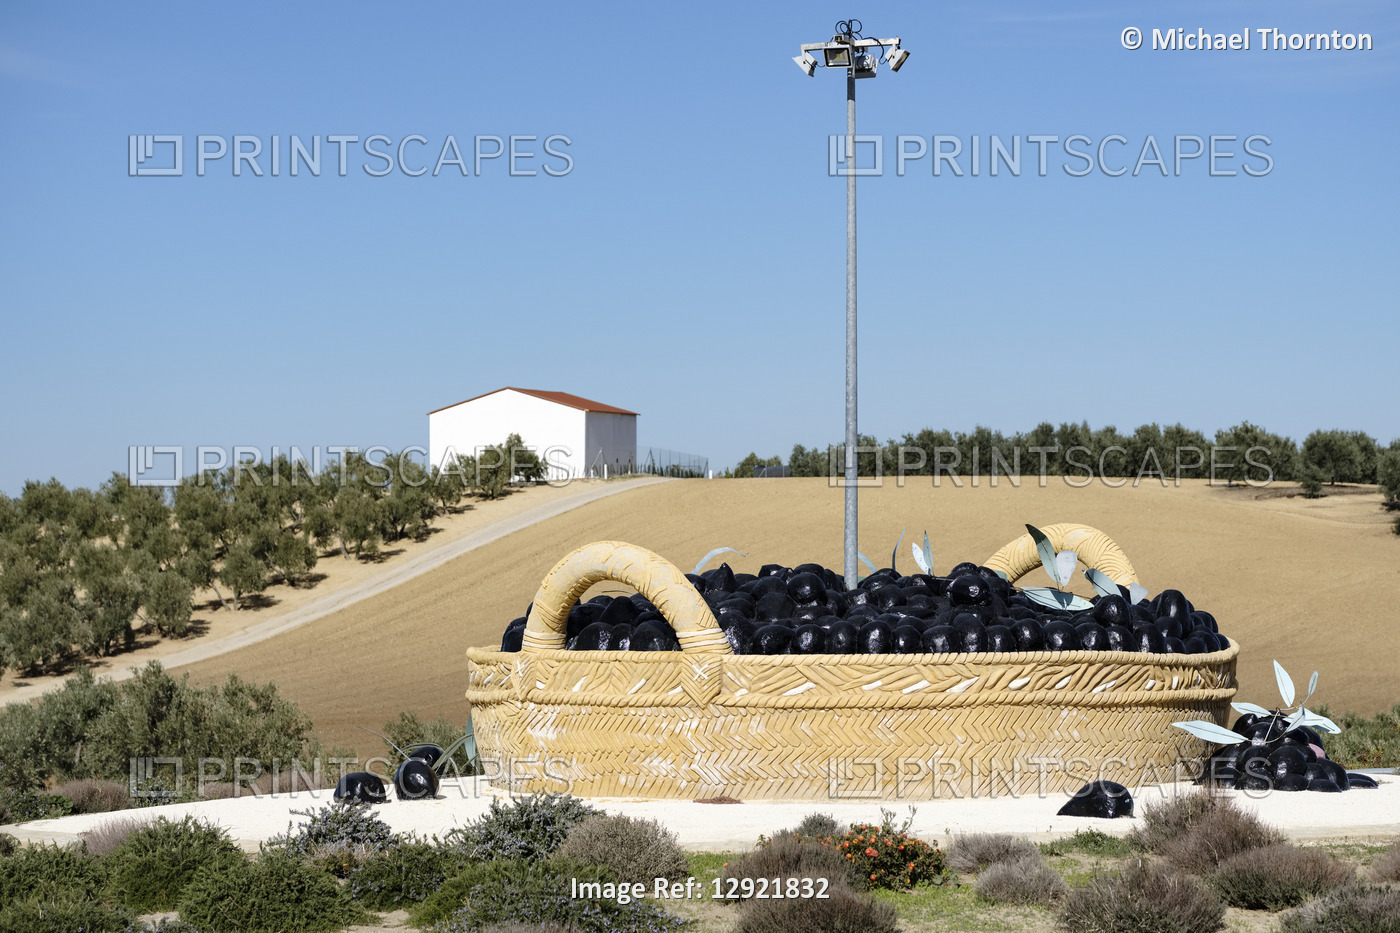 Large Basket of Black Olives as a traffic roundabout centrepiece, El Saucejo, ...